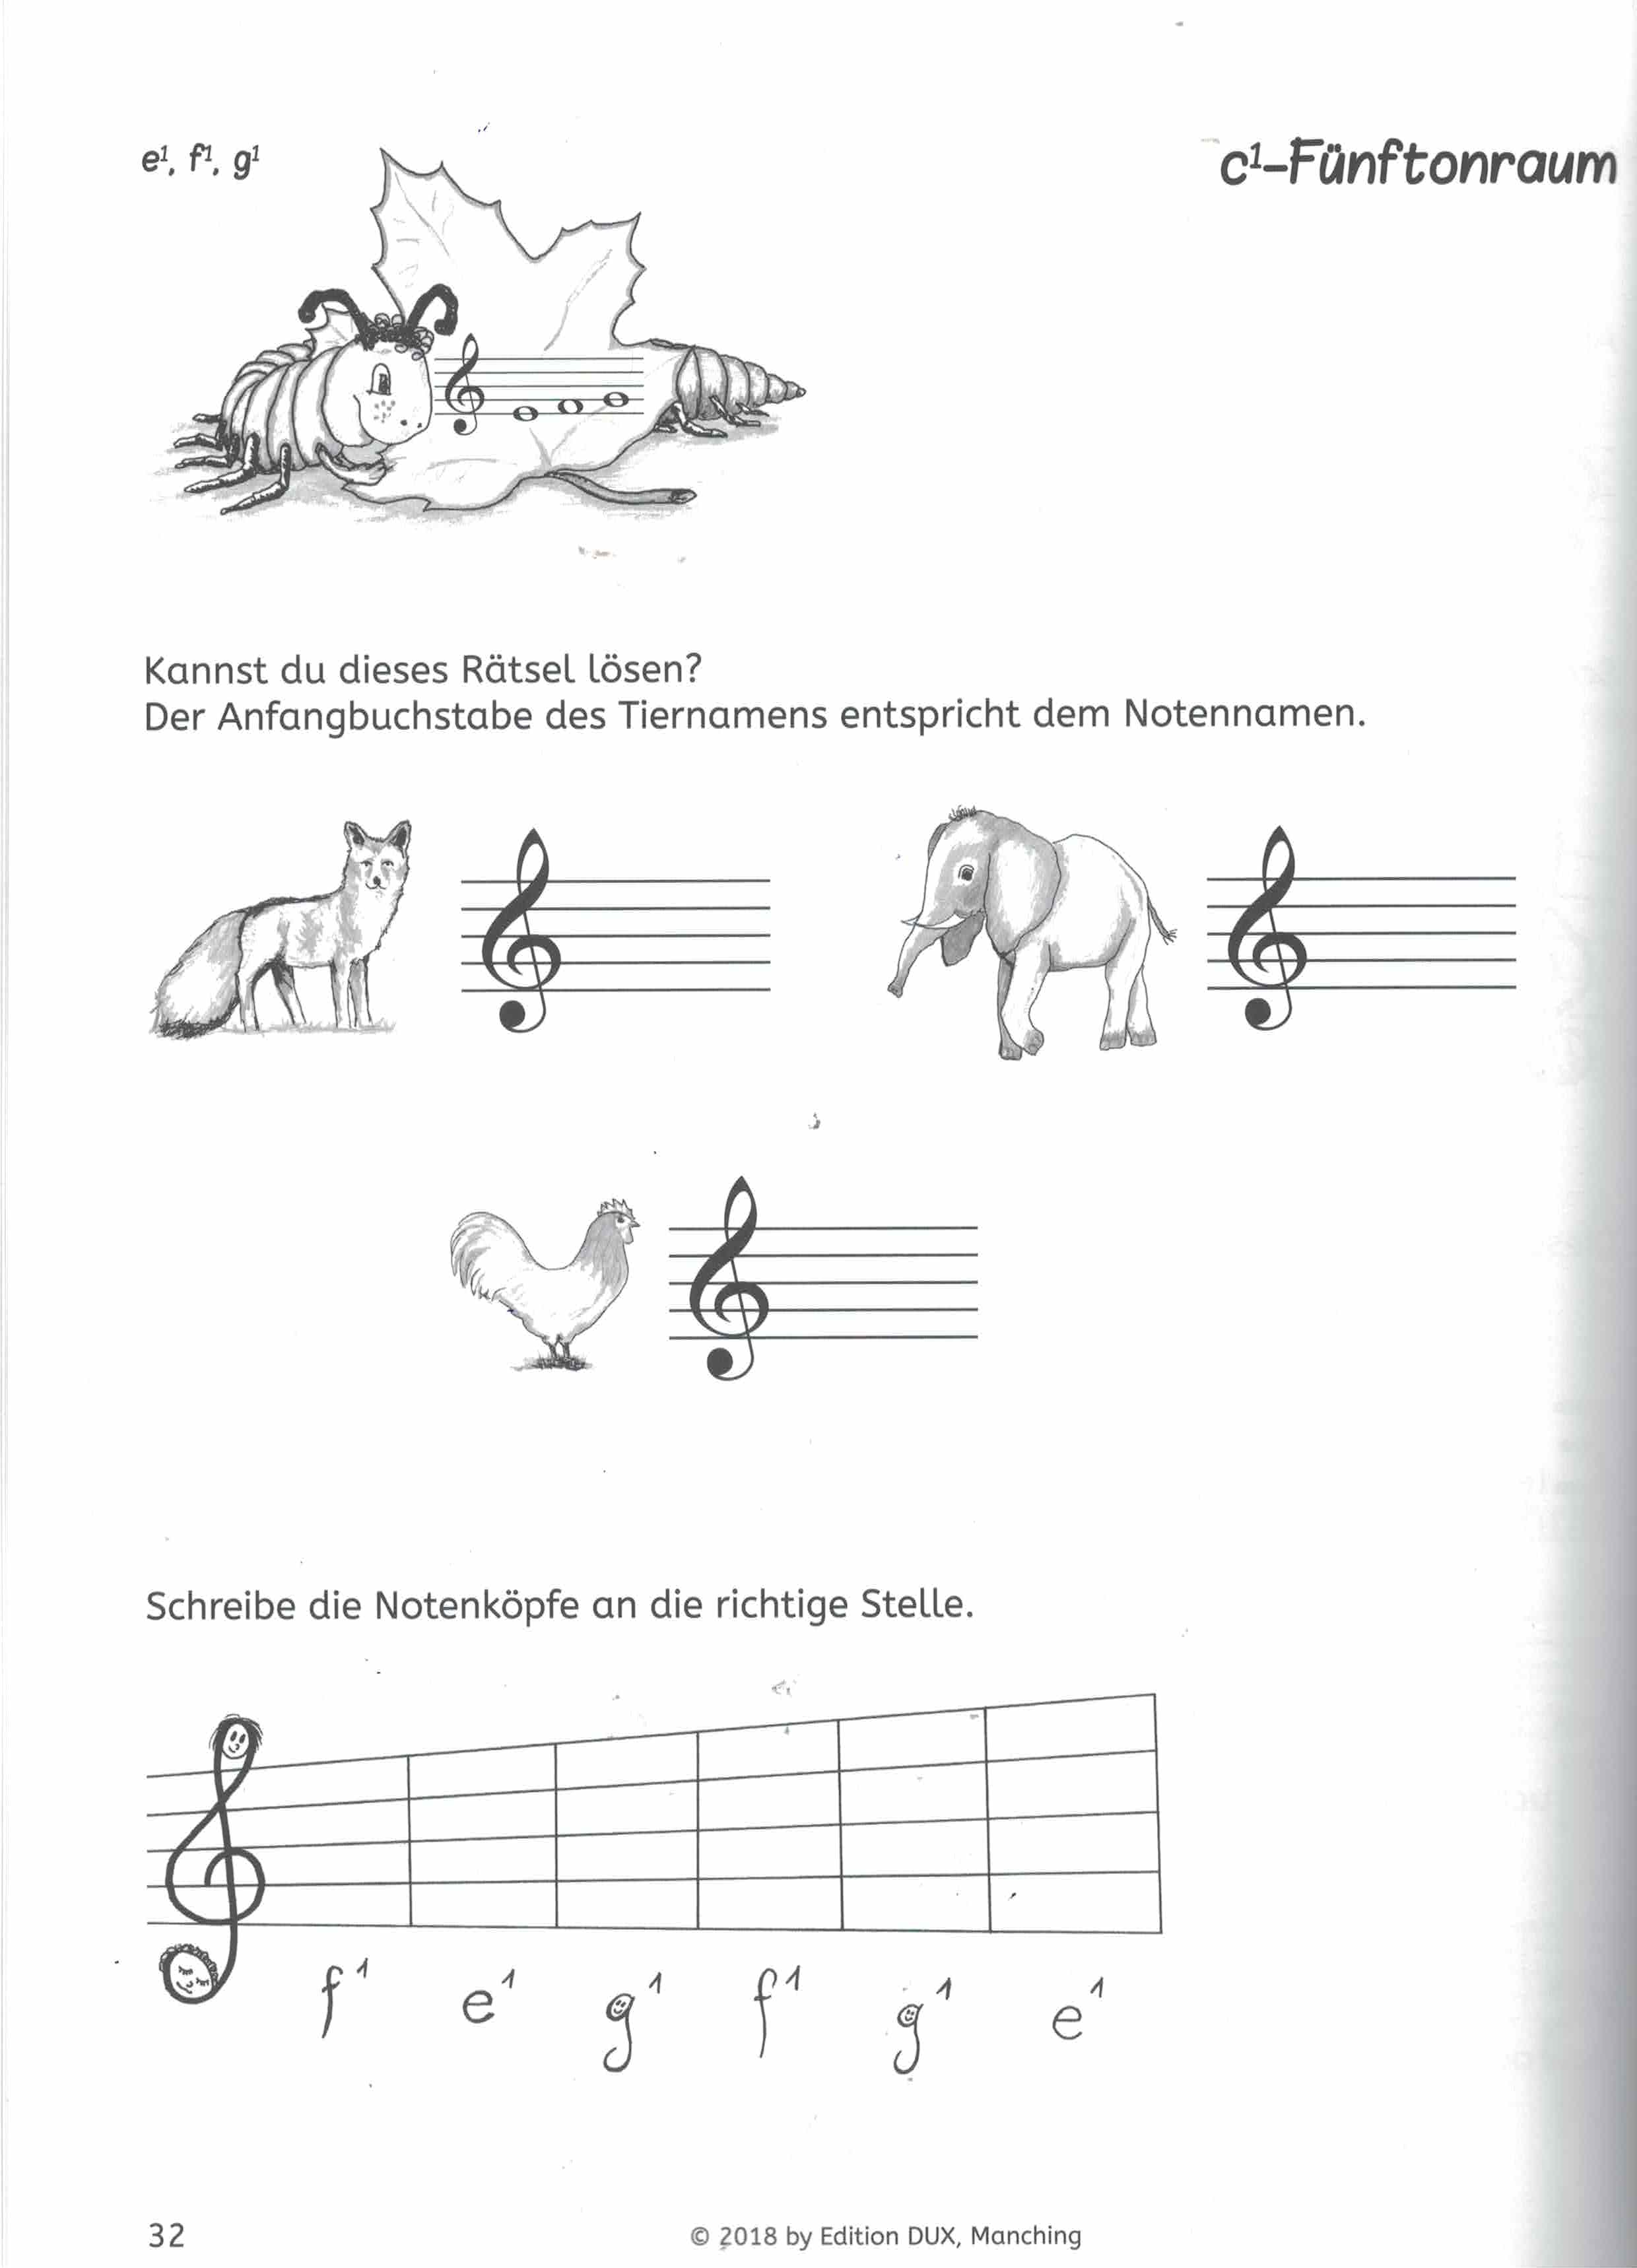 Das Violinschlüsselbuch mit Peppo dem Tausendfüssler